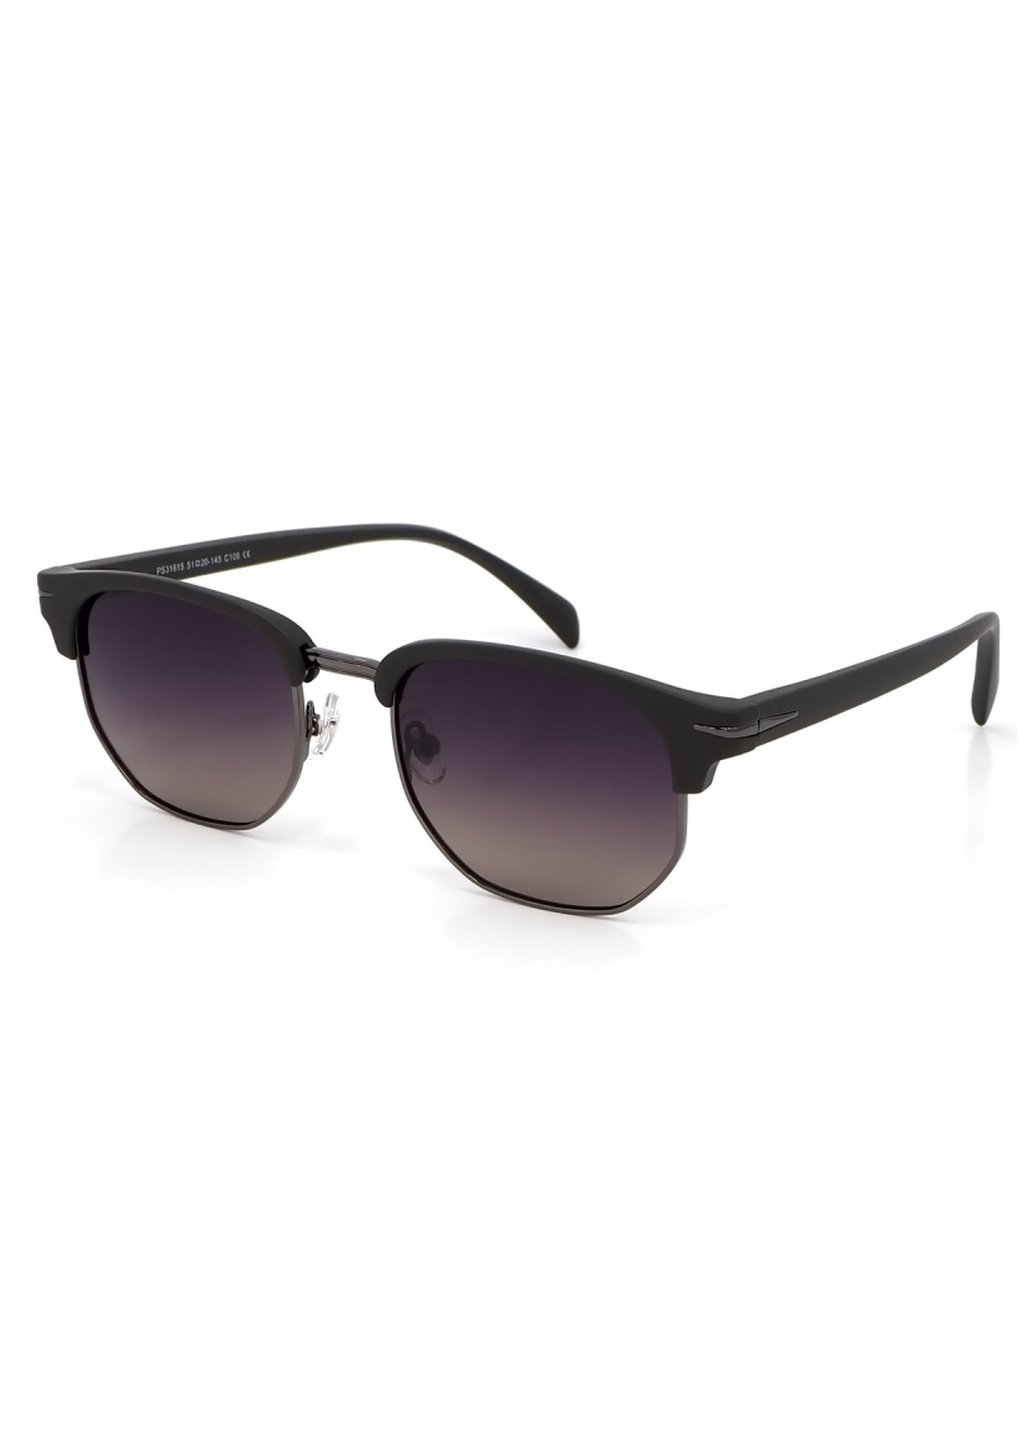 Купить Женские солнцезащитные очки Merlini с поляризацией S31815P 117035 - Черный в интернет-магазине